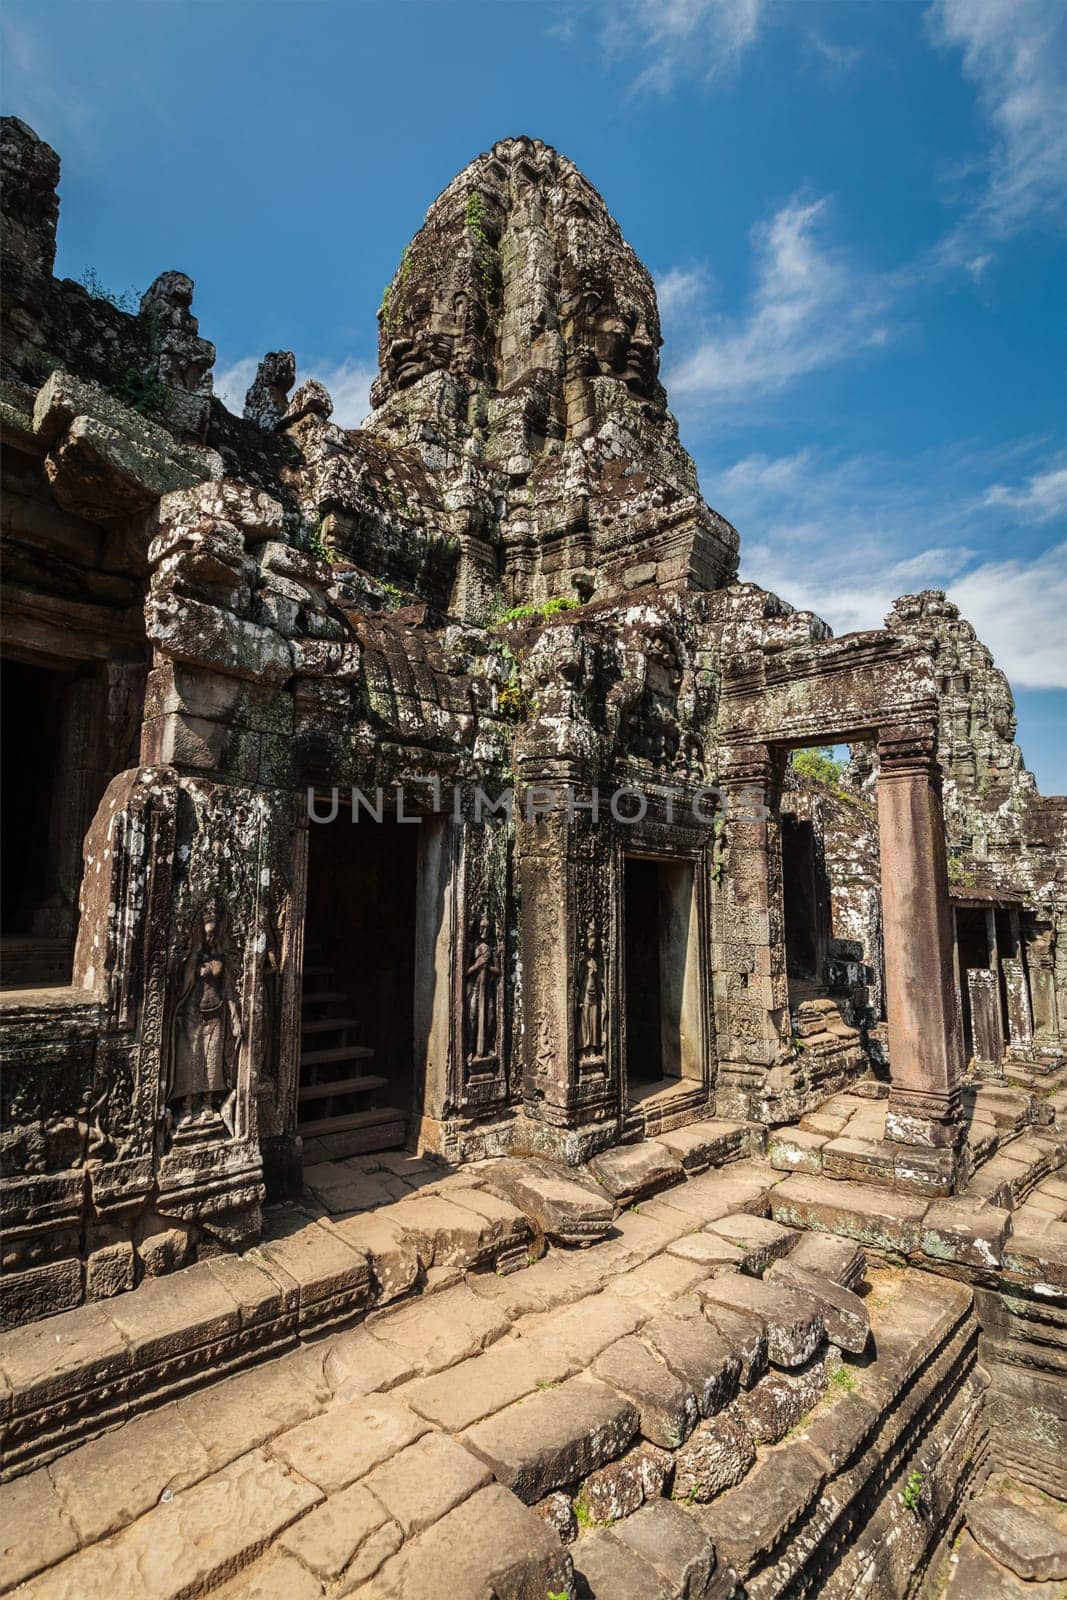 Bayon temple, Angkor Thom, Cambodia by dimol